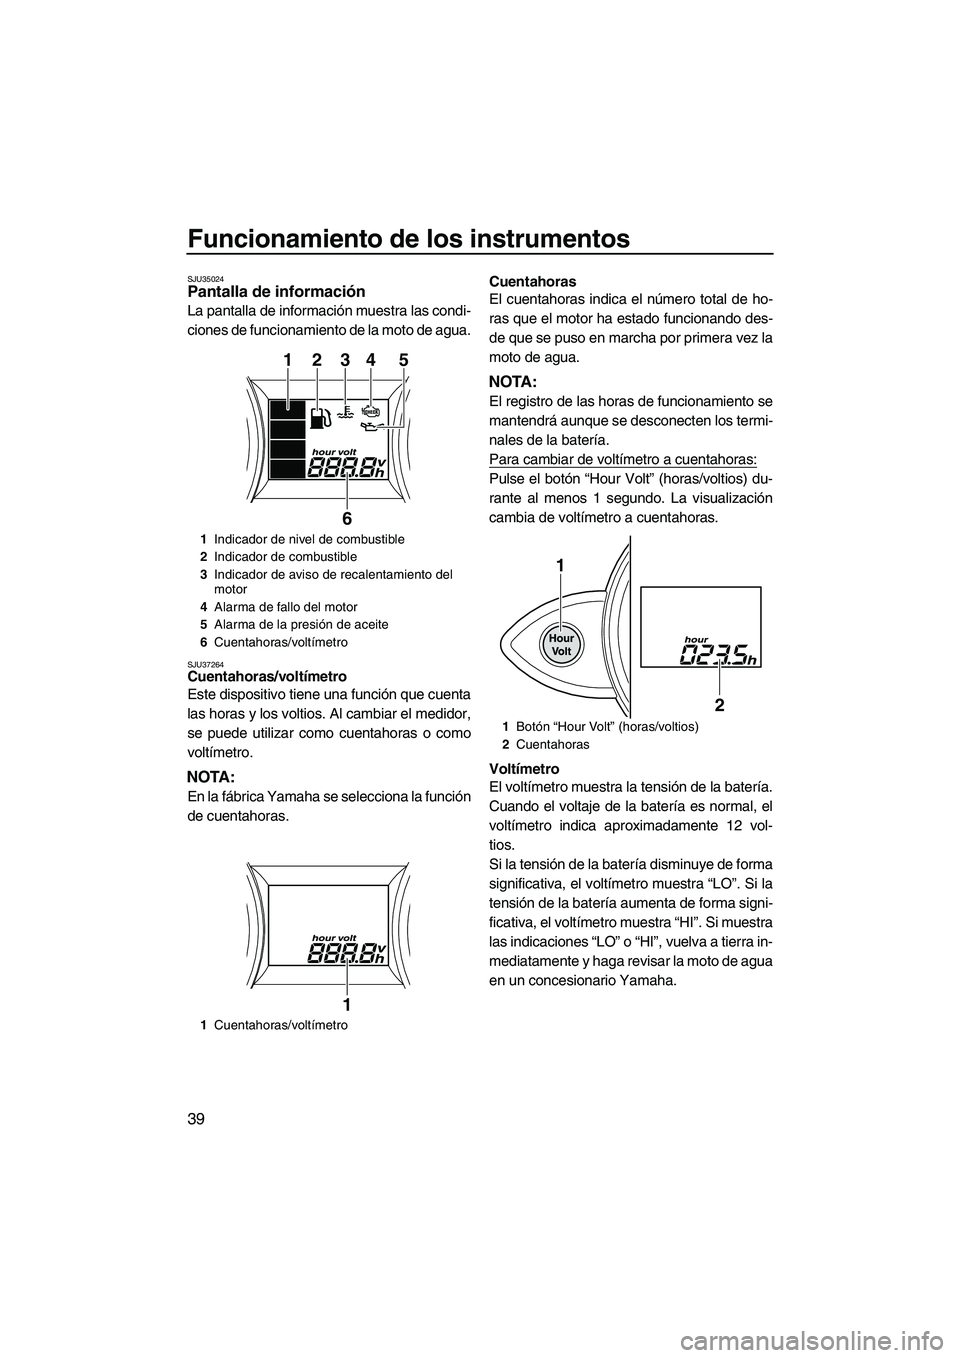 YAMAHA FZS 2013  Manuale de Empleo (in Spanish) Funcionamiento de los instrumentos
39
SJU35024Pantalla de información 
La pantalla de información muestra las condi-
ciones de funcionamiento de la moto de agua.
SJU37264Cuentahoras/voltímetro 
Est